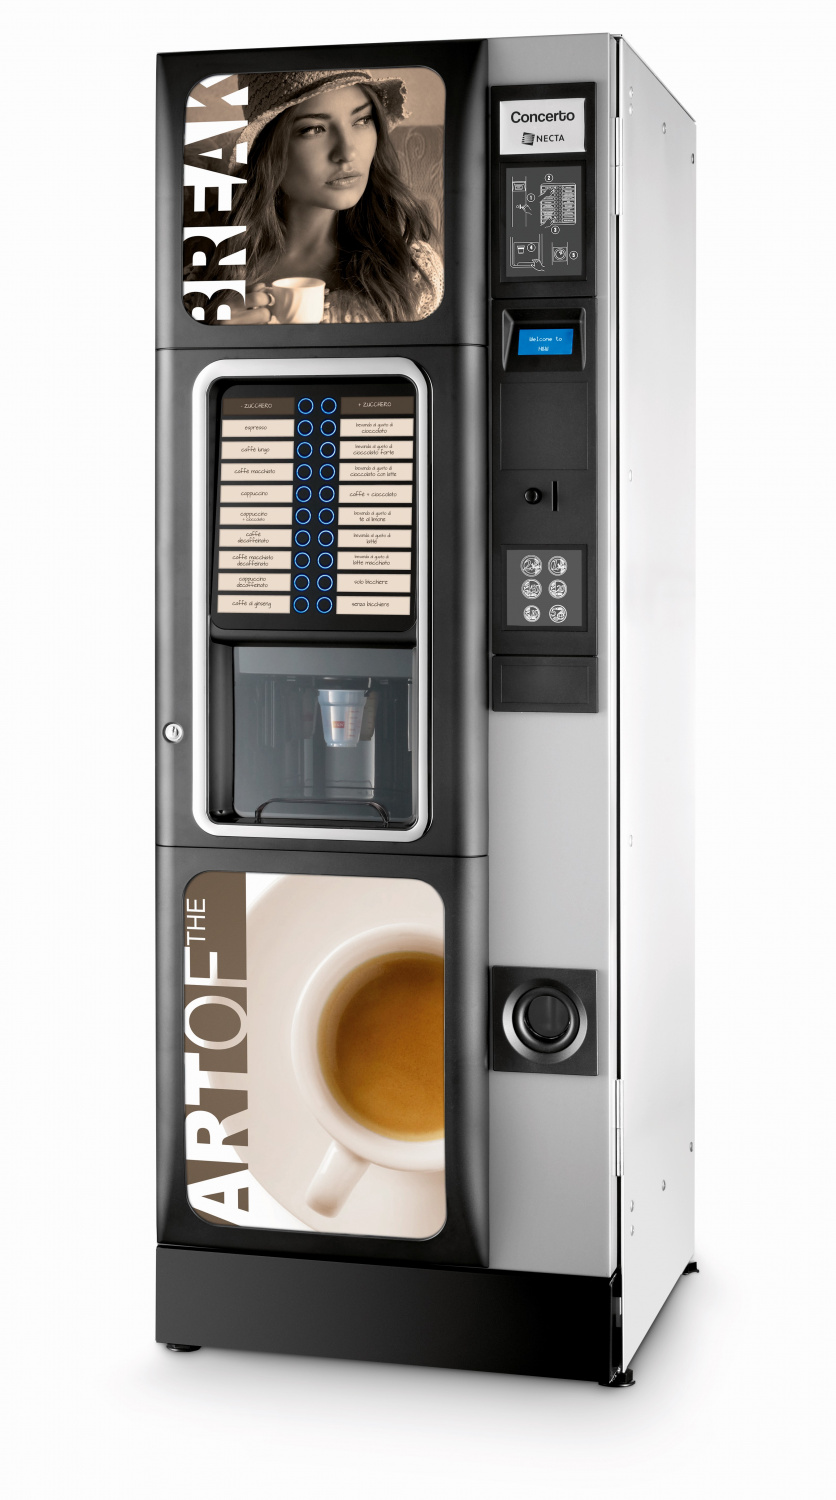 Купить кофе аппарат самообслуживания для бизнеса. Кофейный автомат Concerto es7. Кофейный автомат Saeco Oasi 400. Вендинговые аппараты Necta. Кофе аппарат Necta.